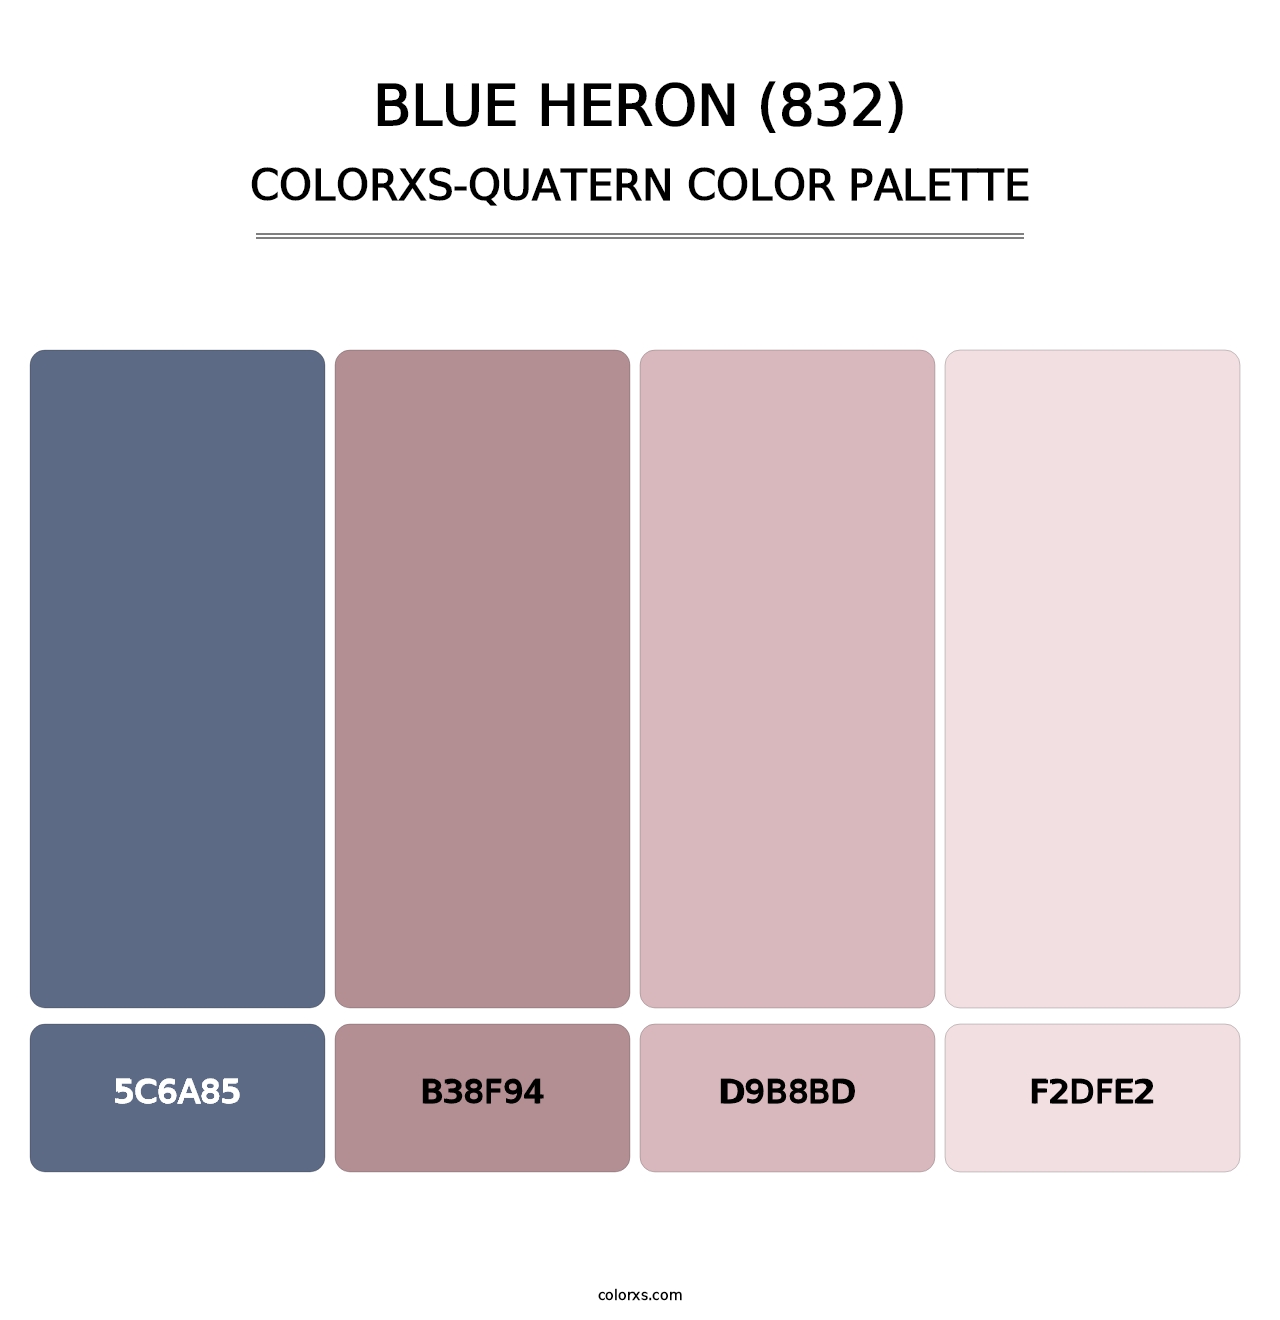 Blue Heron (832) - Colorxs Quatern Palette